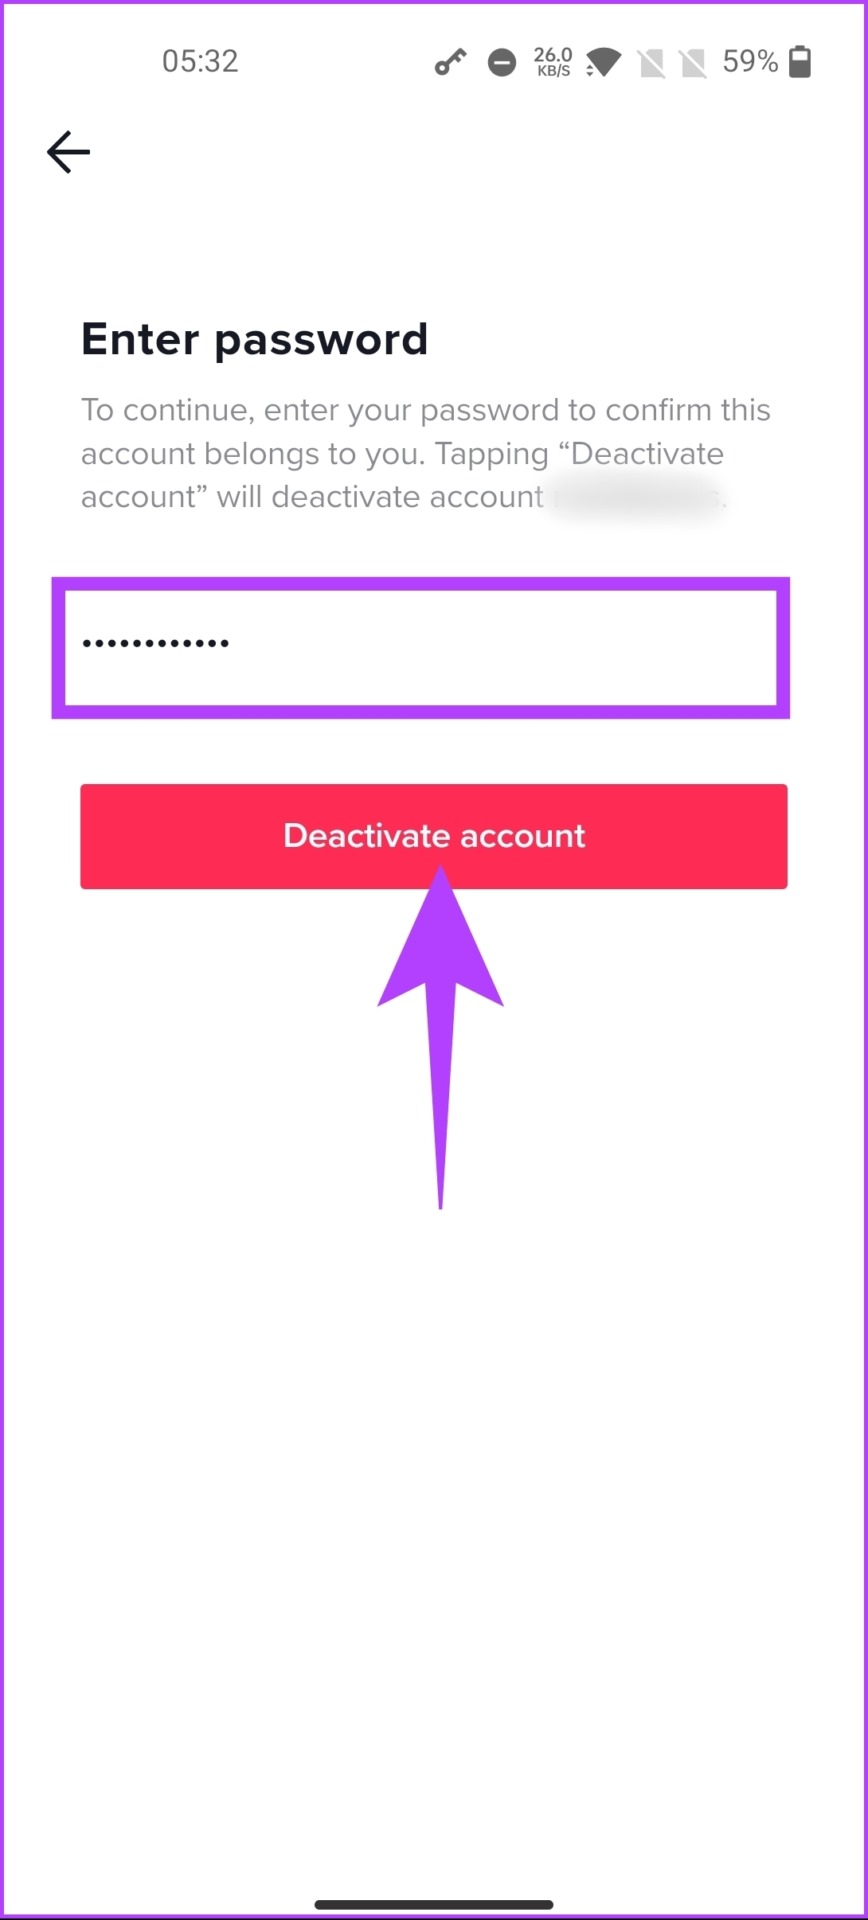 tap Deactivate account